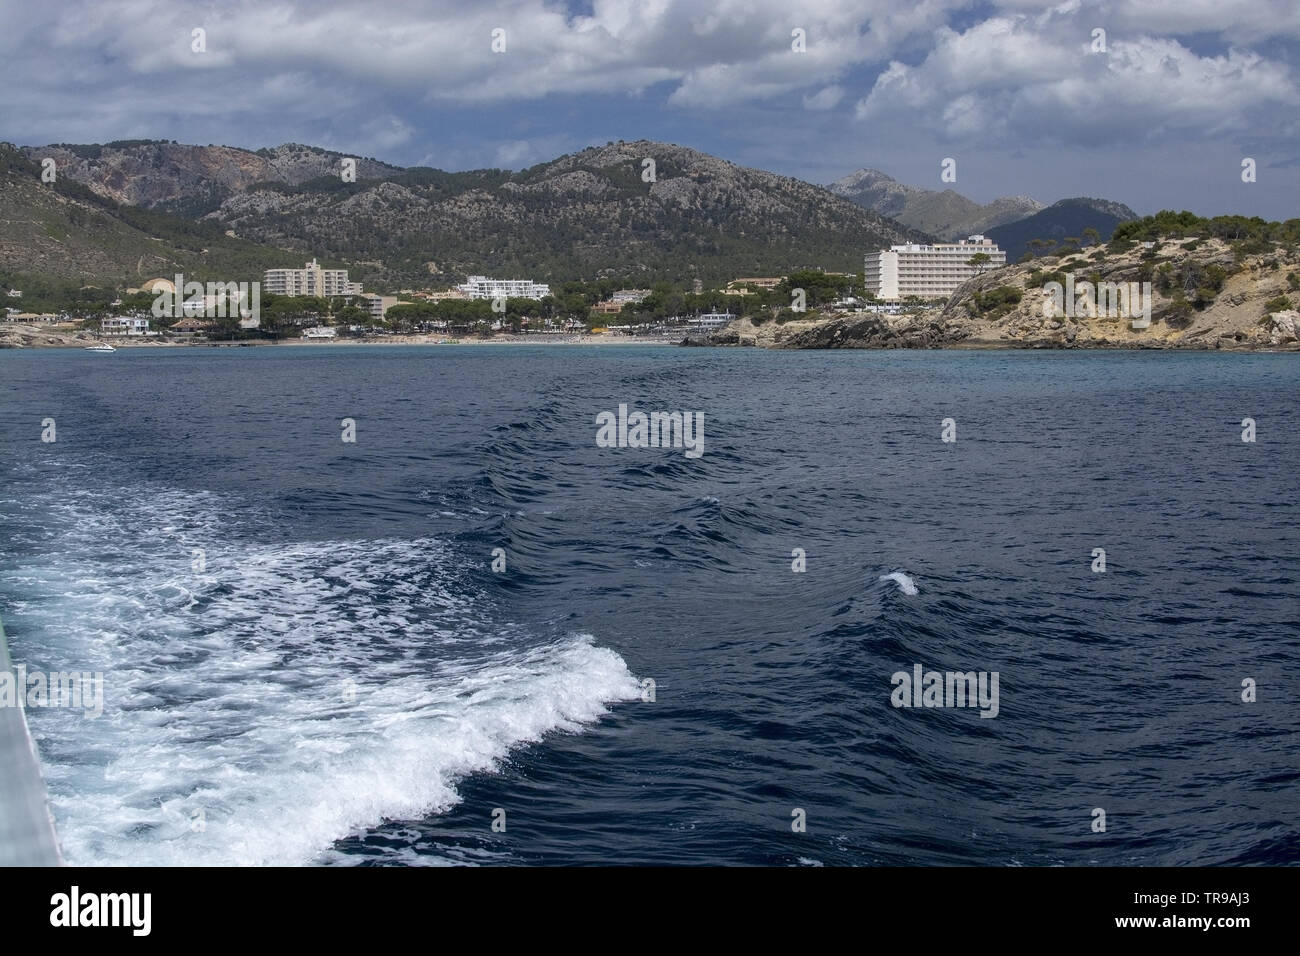 SANTA PONSA, MALLORCA, SPAIN - MAY 29, 2019: Coastal rocky landscape from sea on May 29, 2019 in Santa Ponsa, Mallorca, Spain. Stock Photo